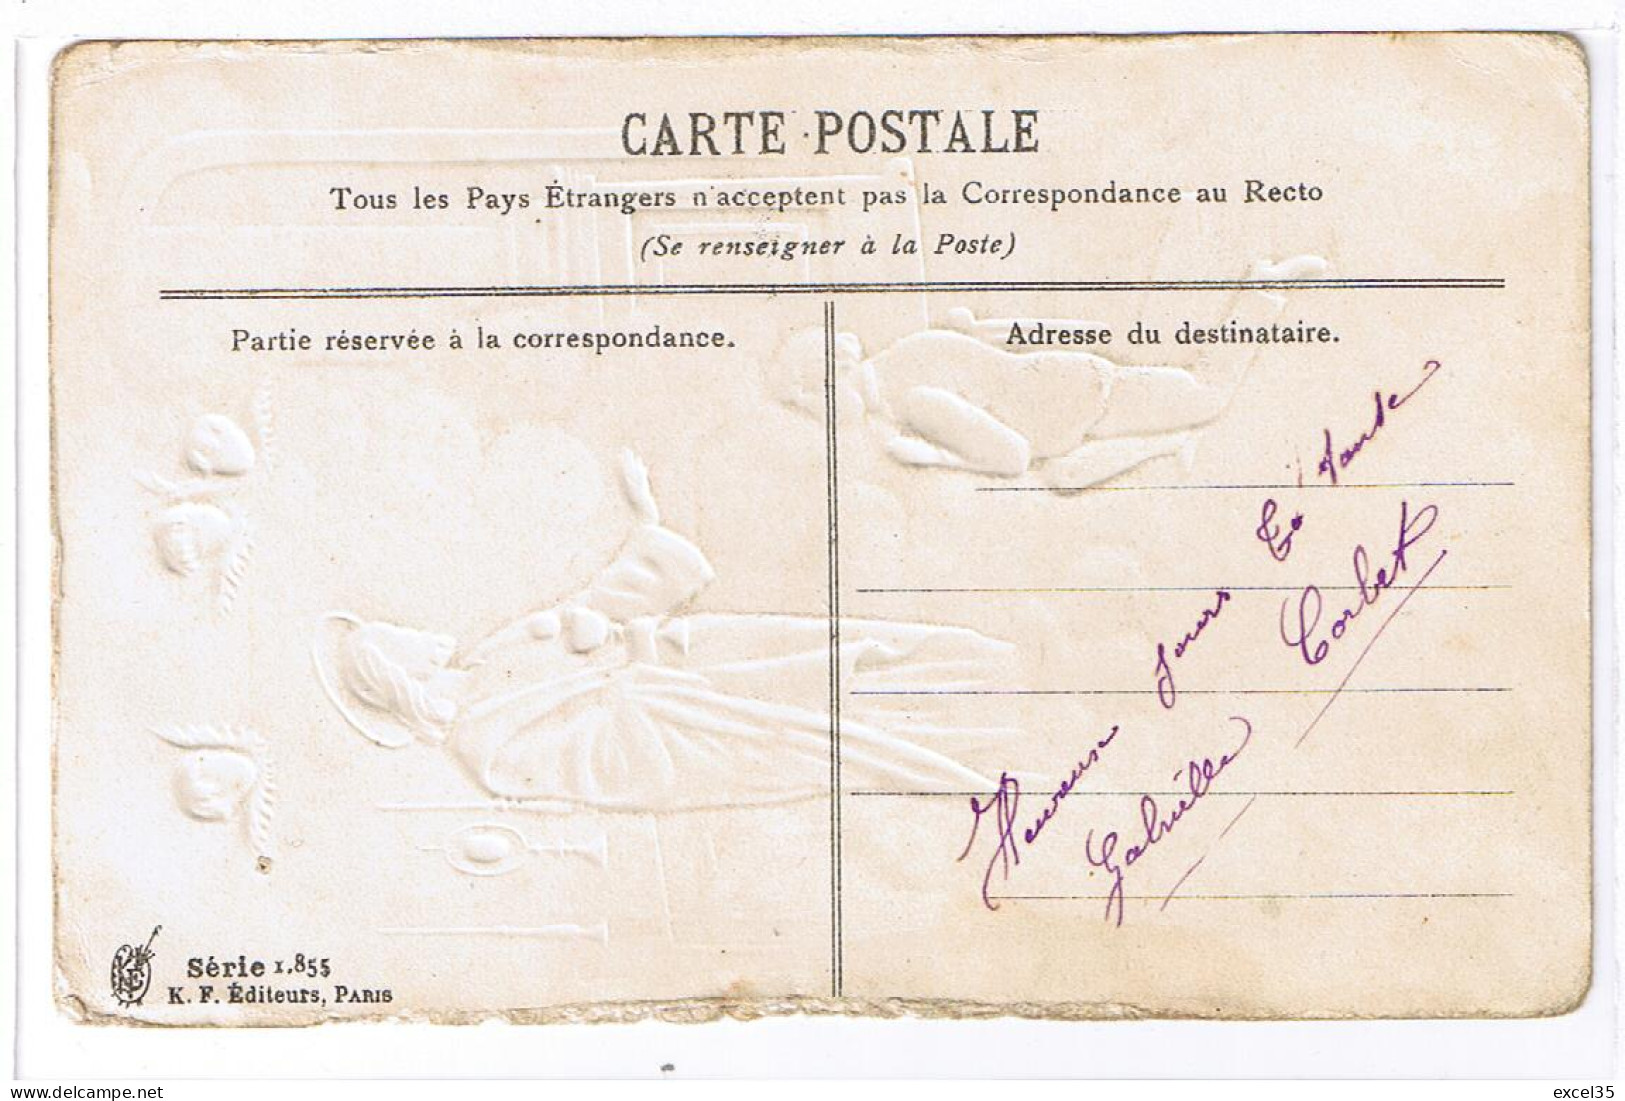 Souvenir De Première Communion Motifs En Relief Par Gaufrage - K F Editeurs, Paris - Série 1.855 - Communie